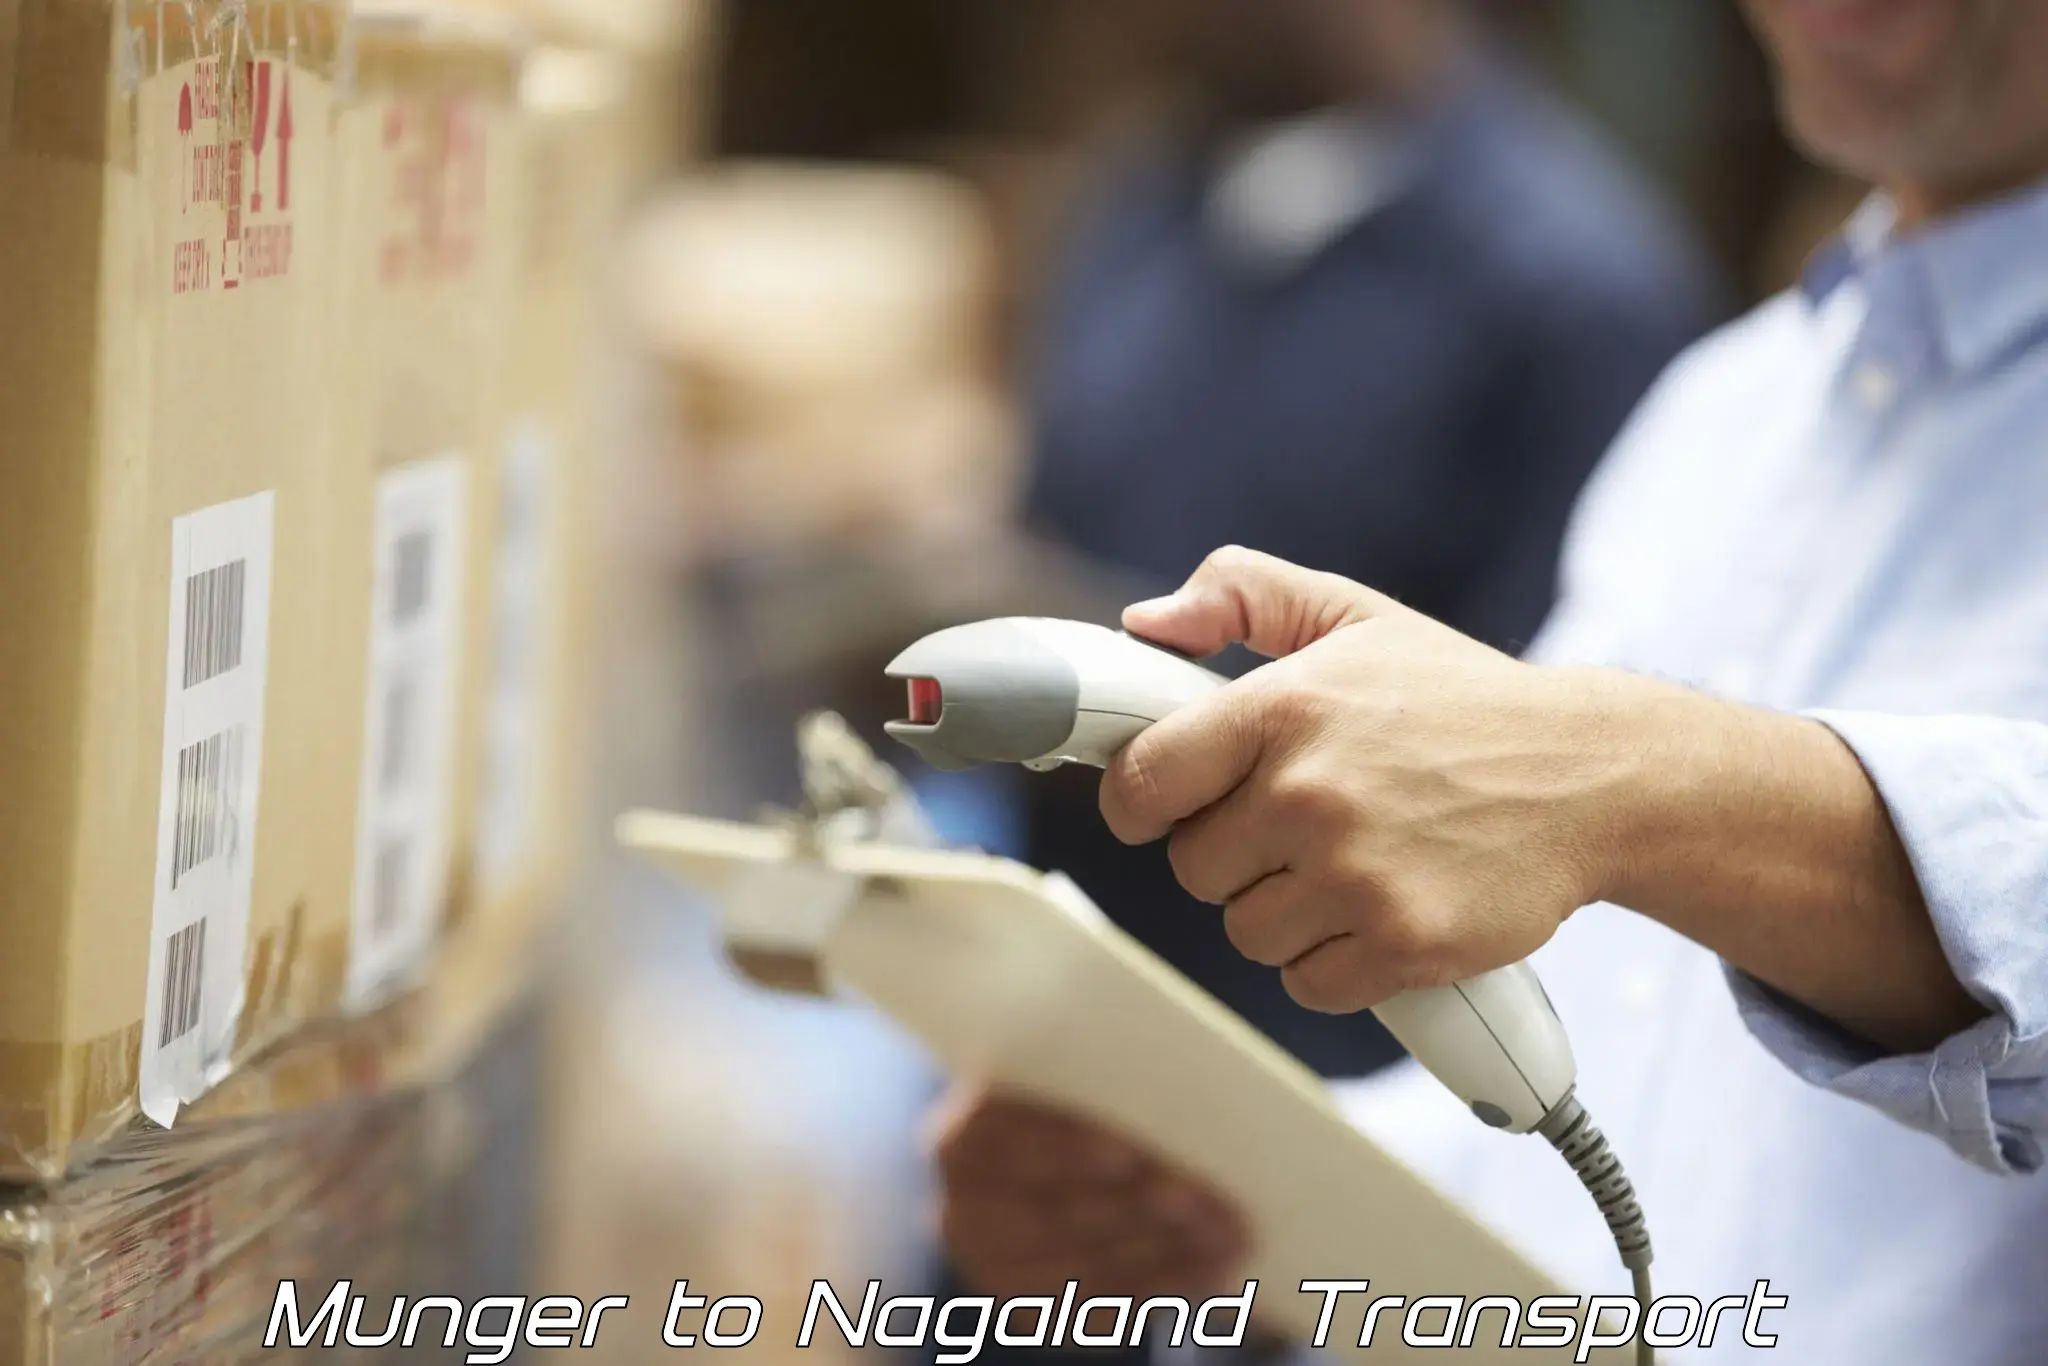 Online transport service Munger to NIT Nagaland